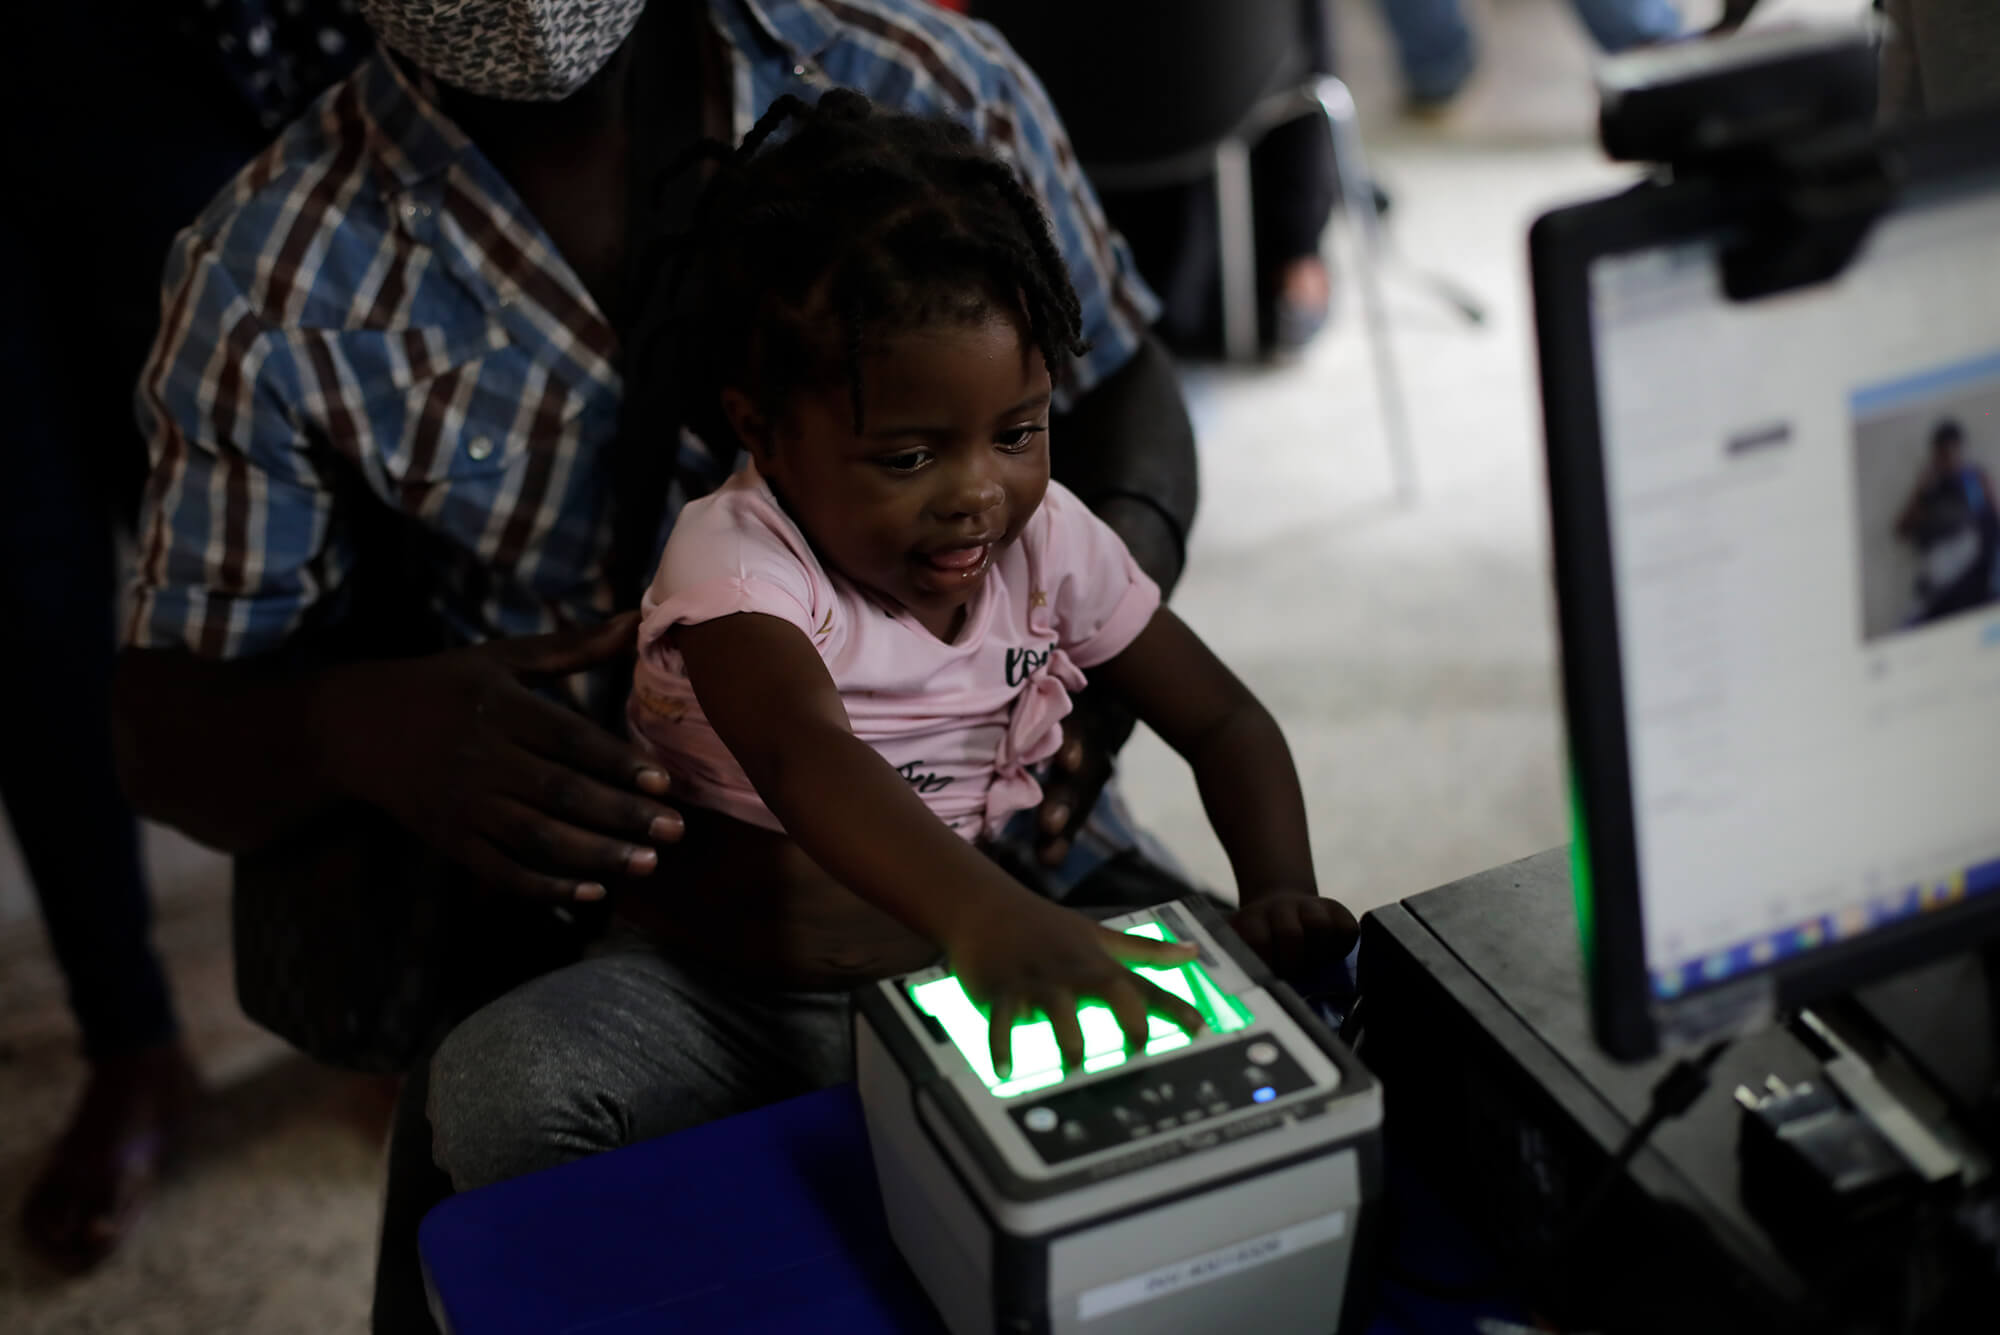 Los niños también son registrados en el centro de Migración. Danlí, Honduras  28 abril 2022 Foto CC/ Jorge Cabrera